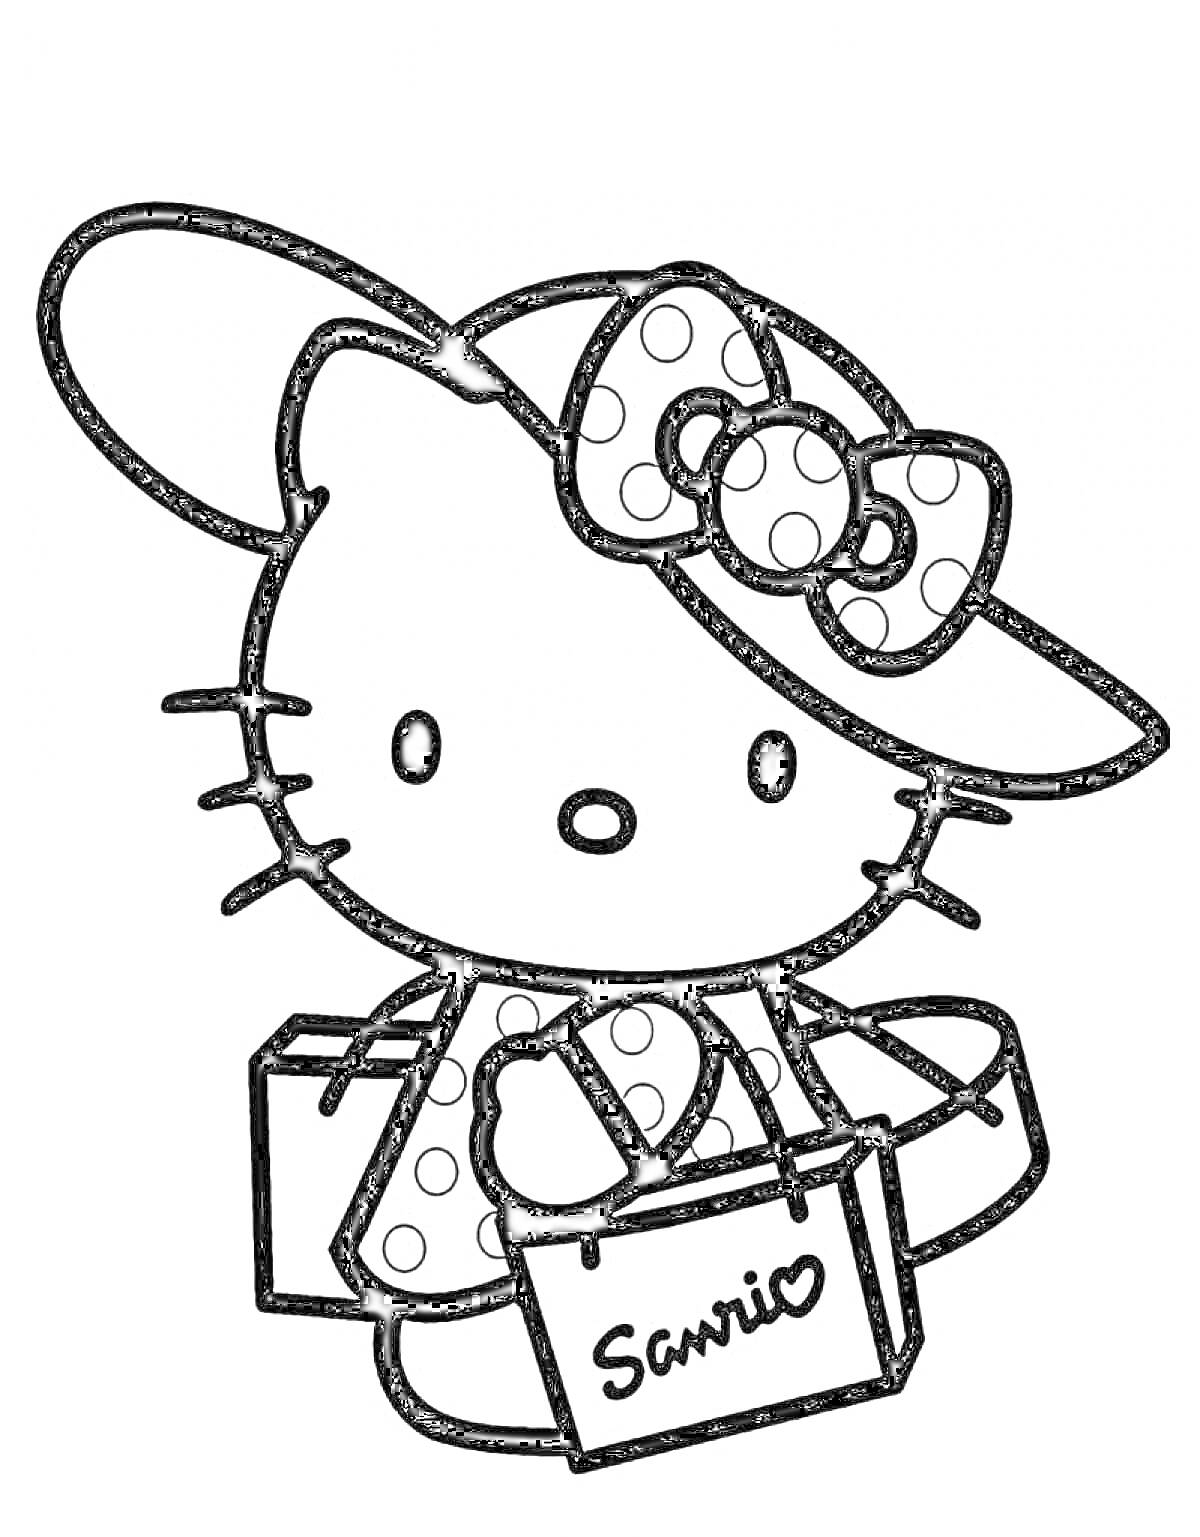 Раскраска Hello Kitty с большими круглыми ушками в шляпе с бантом, в руках держит сумку с надписью 